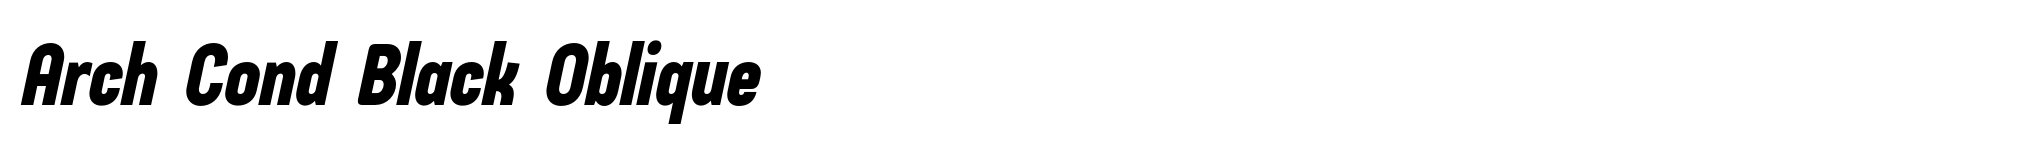 Arch Cond Black Oblique image